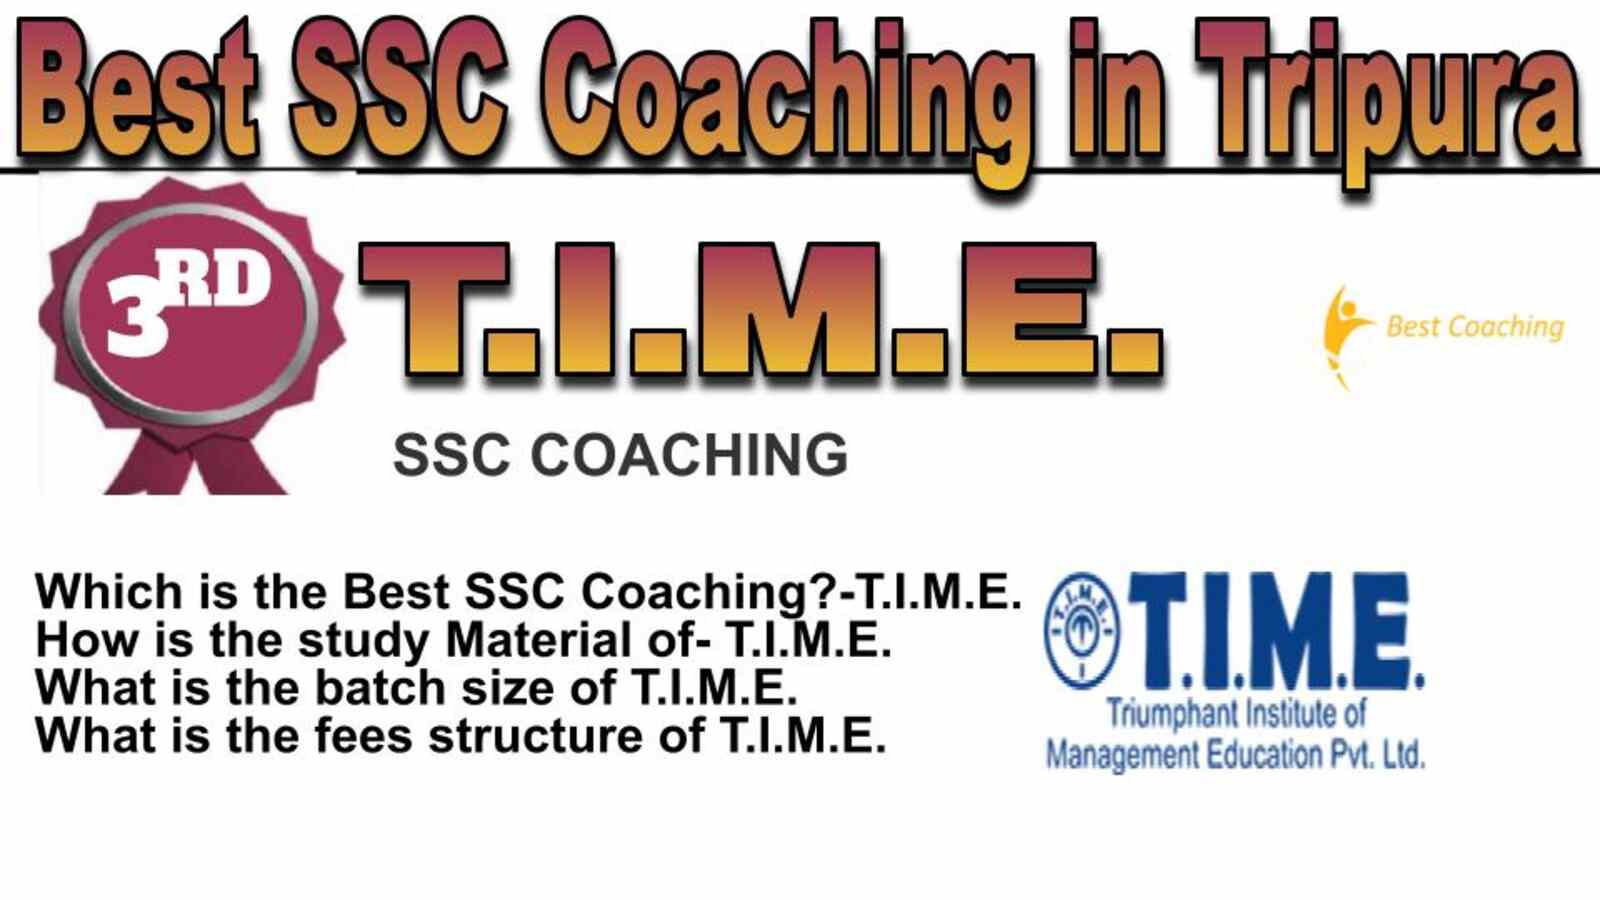 Rank 3 best SSC Coaching in Tripura